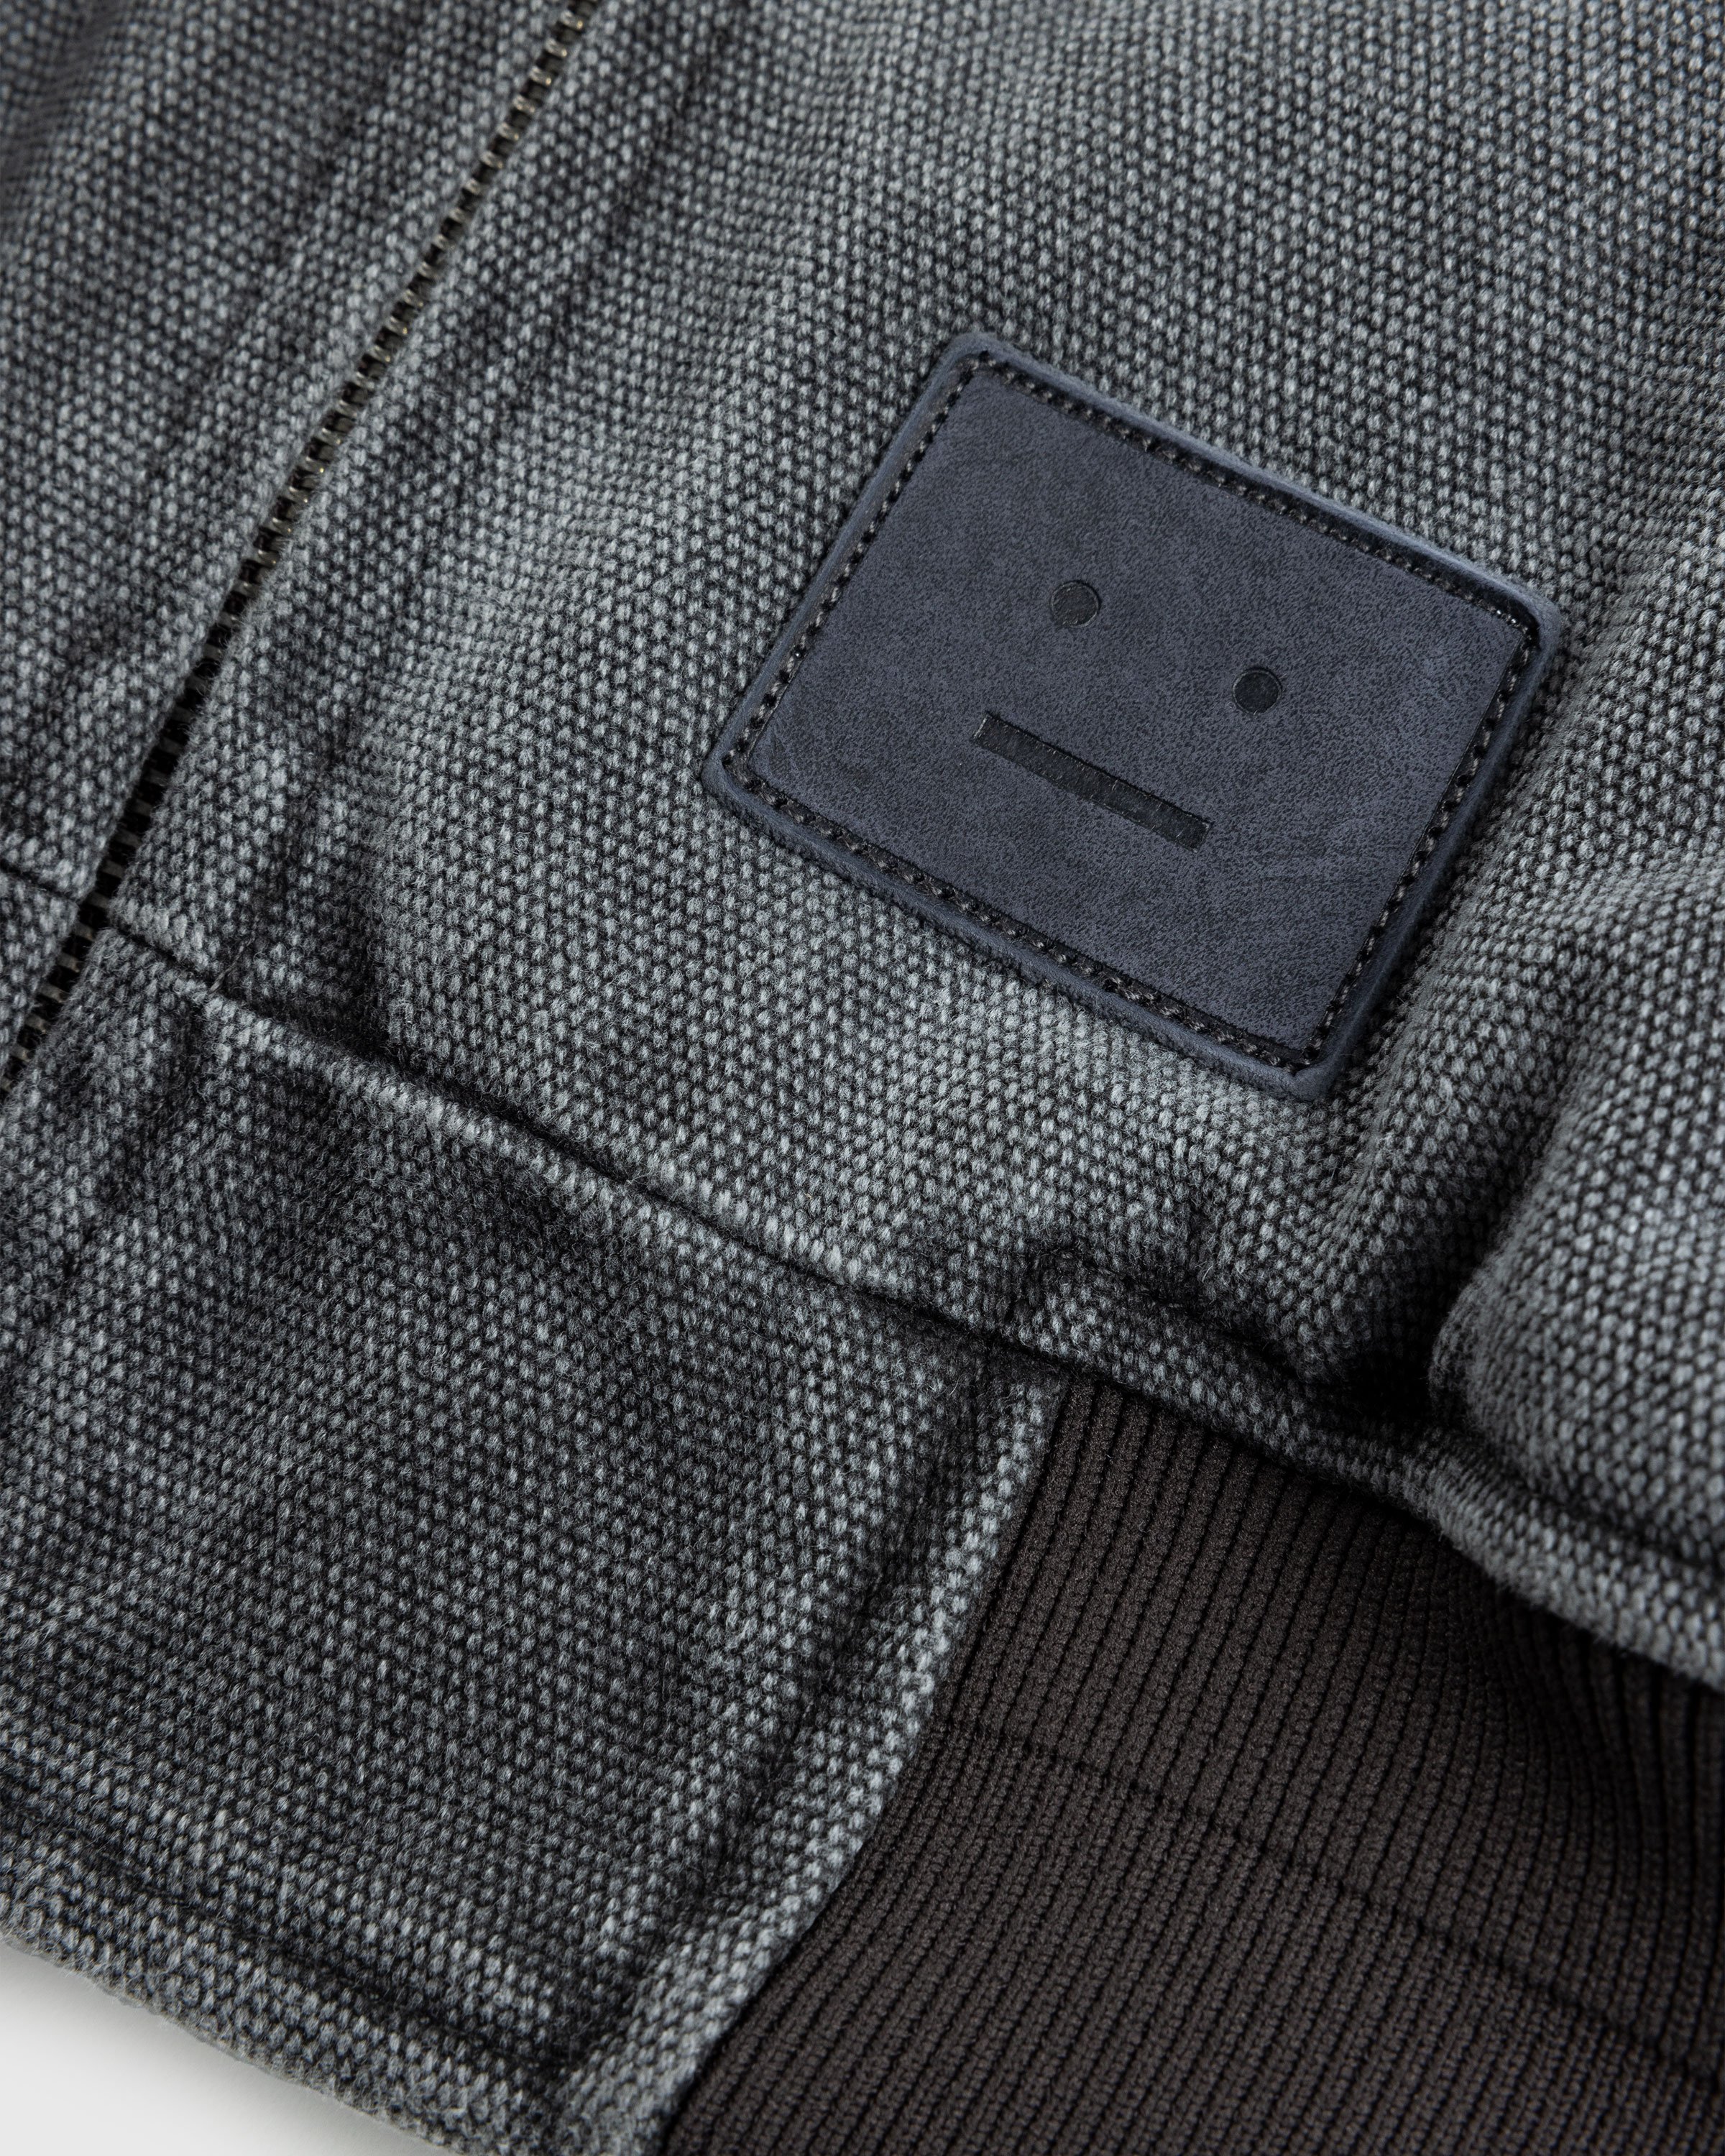 Acne Studios - Cotton Canvas Bomber Jacket Grey - Clothing - Grey - Image 3